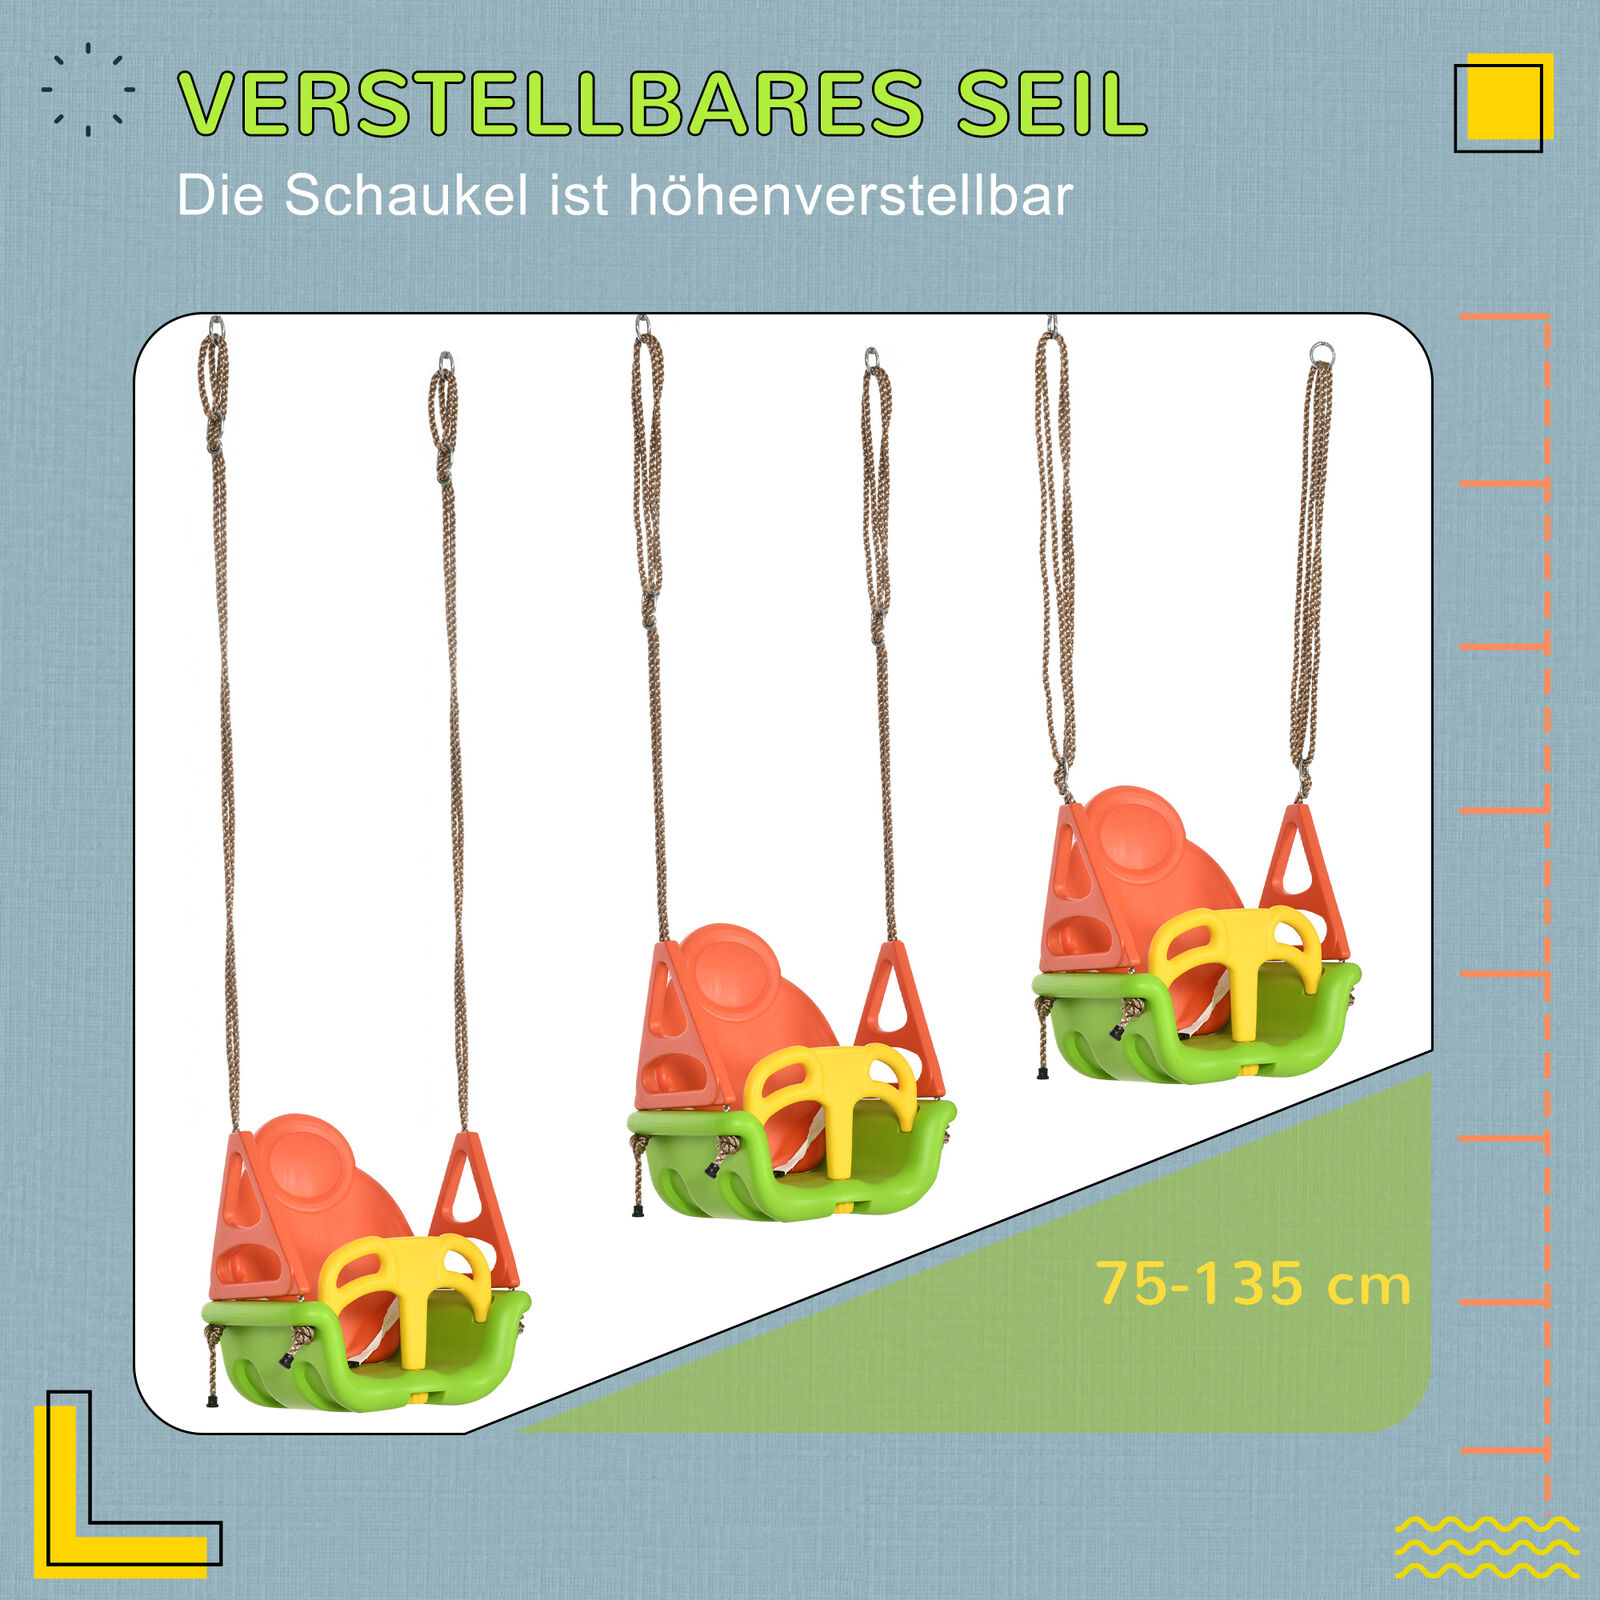 3-in-1 Babyschaukel, Kinderschaukel mit verstellbarem Seil, Schaukelsitz, Grün